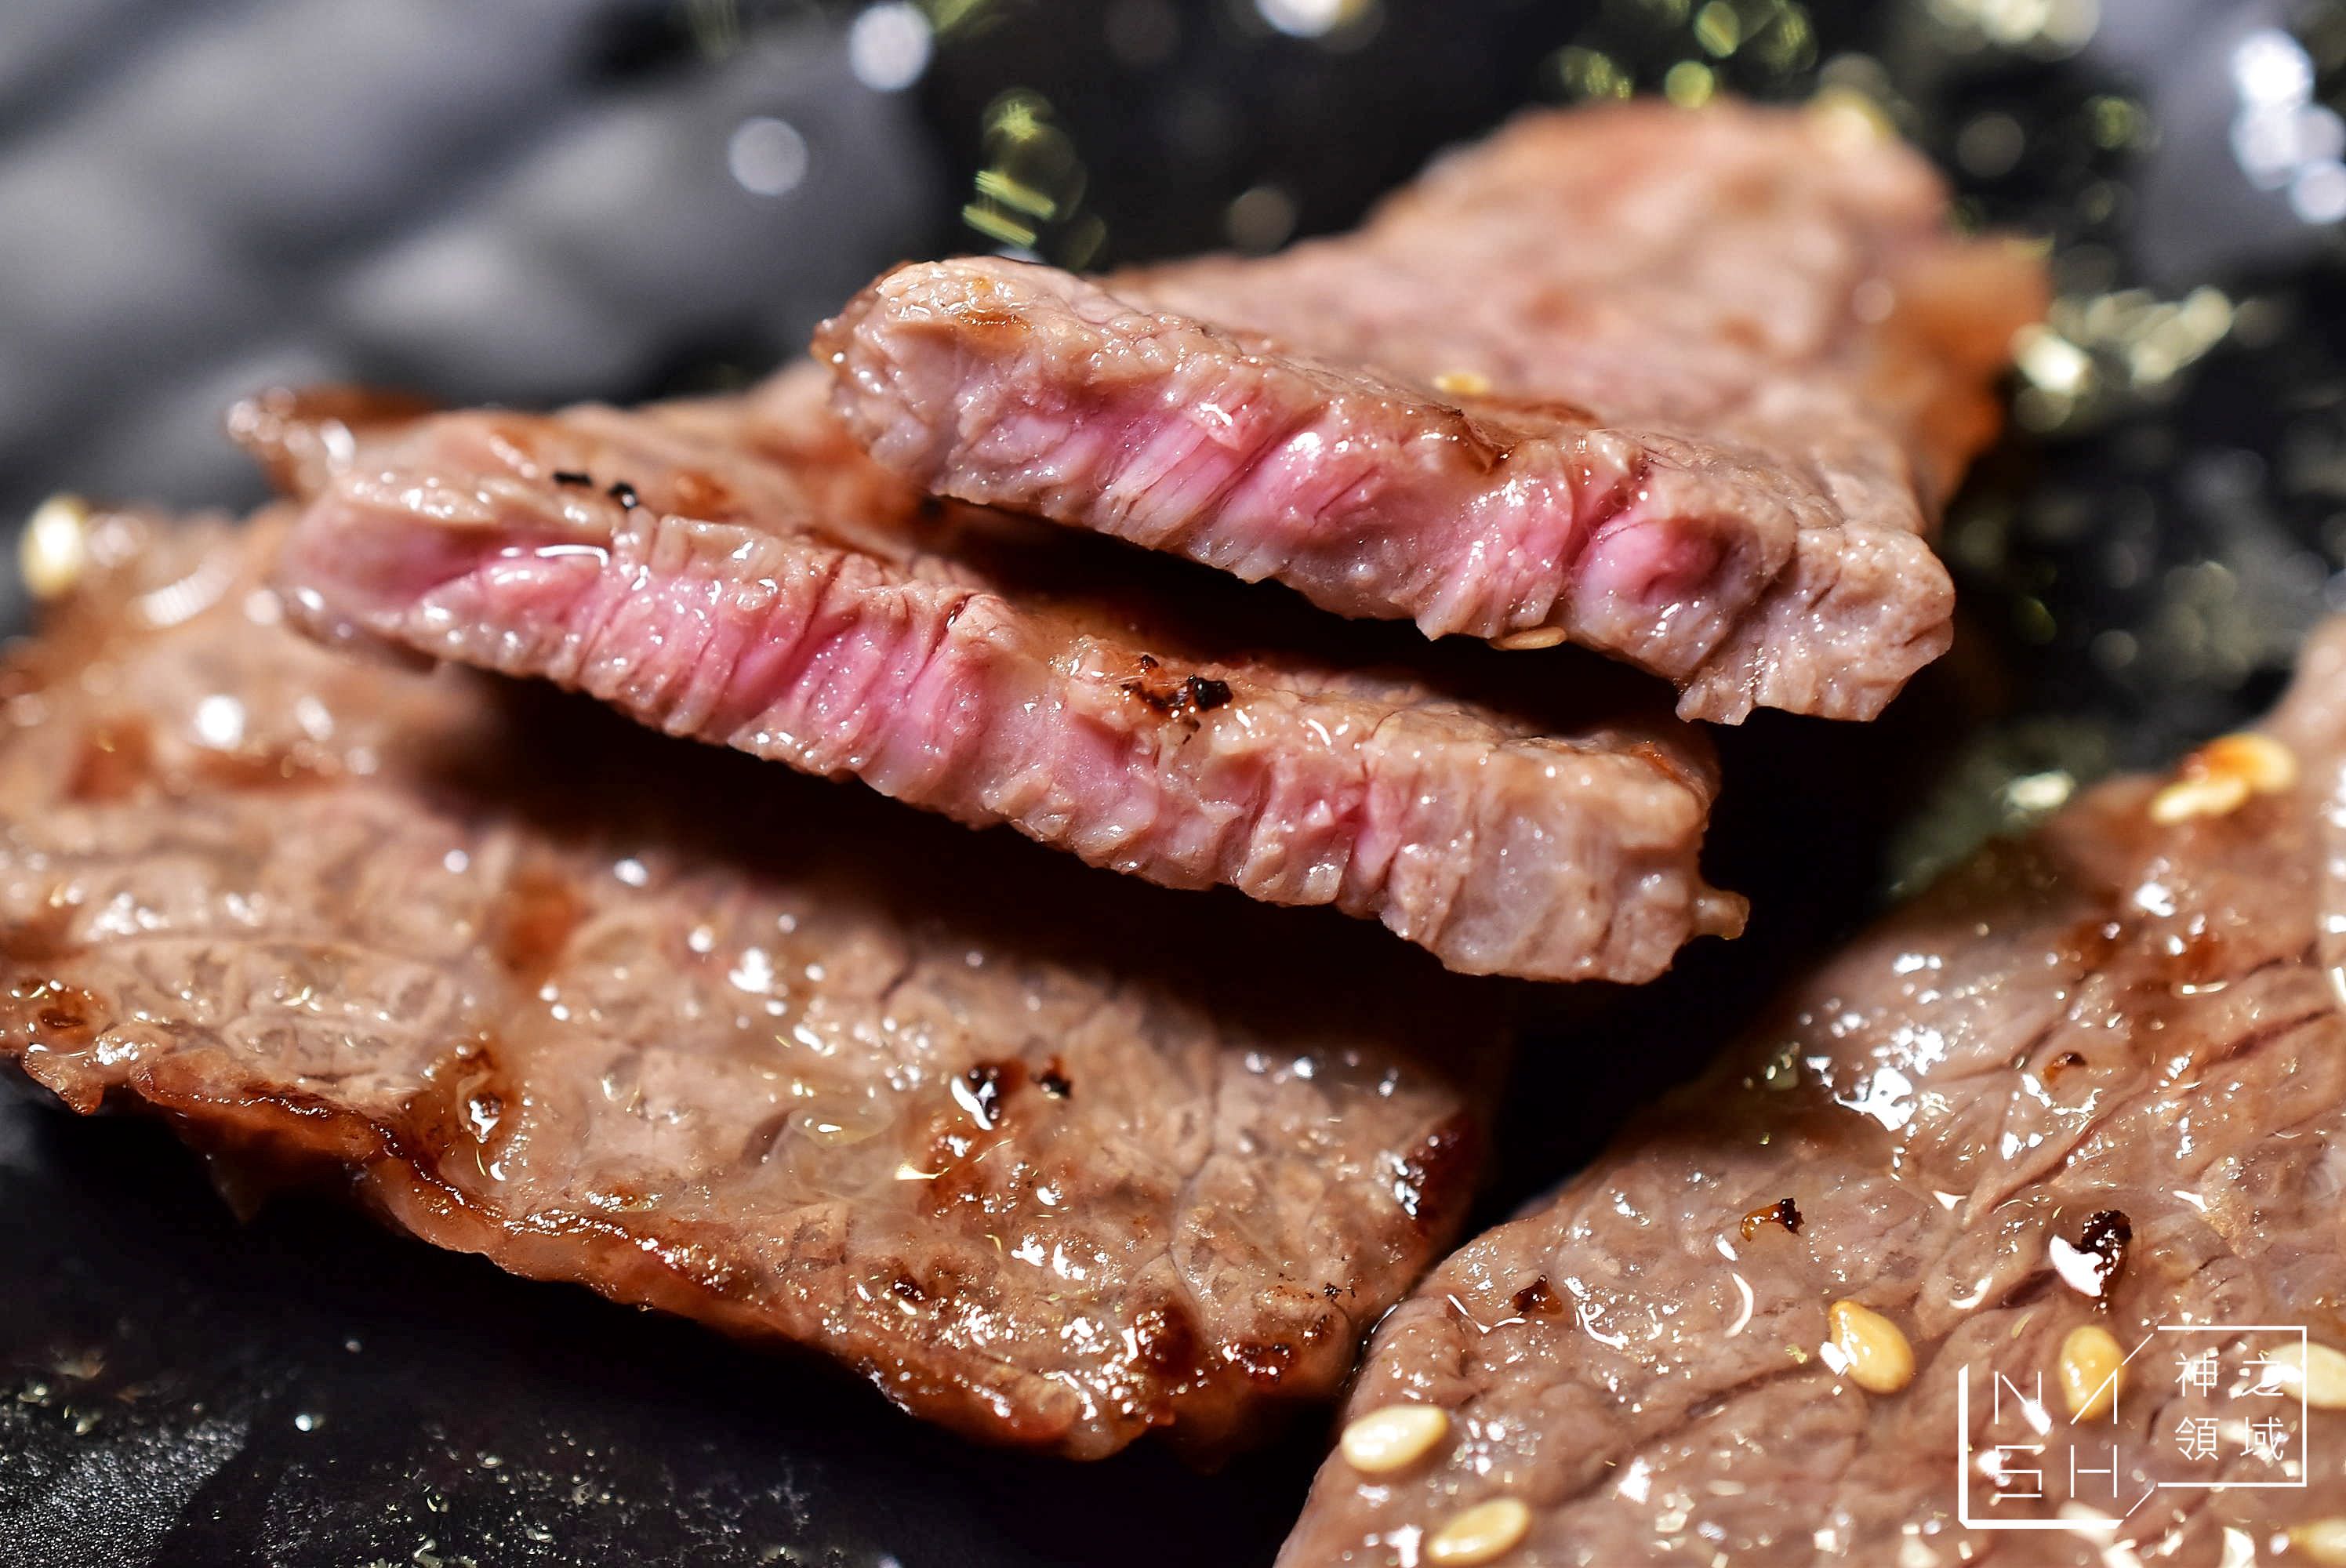 板橋燒肉推薦,鹿兒島燒肉專賣店,板橋燒肉單點推薦